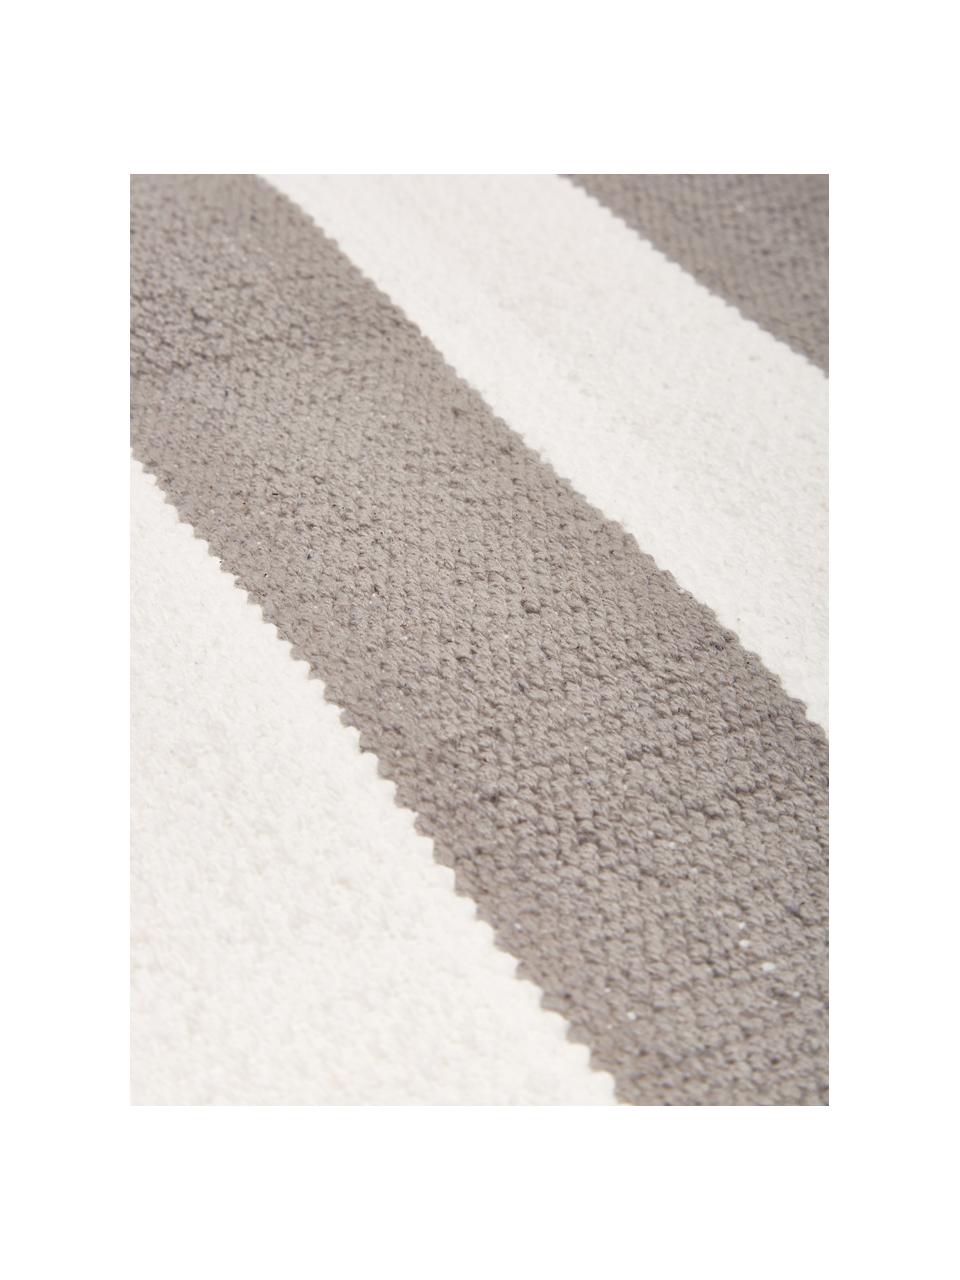 Tappeto in cotone a righe color grigio/bianco tessuto a mano Blocker, 100% cotone, Bianco crema/grigio chiaro, Larg. 160 x Lung. 230 cm